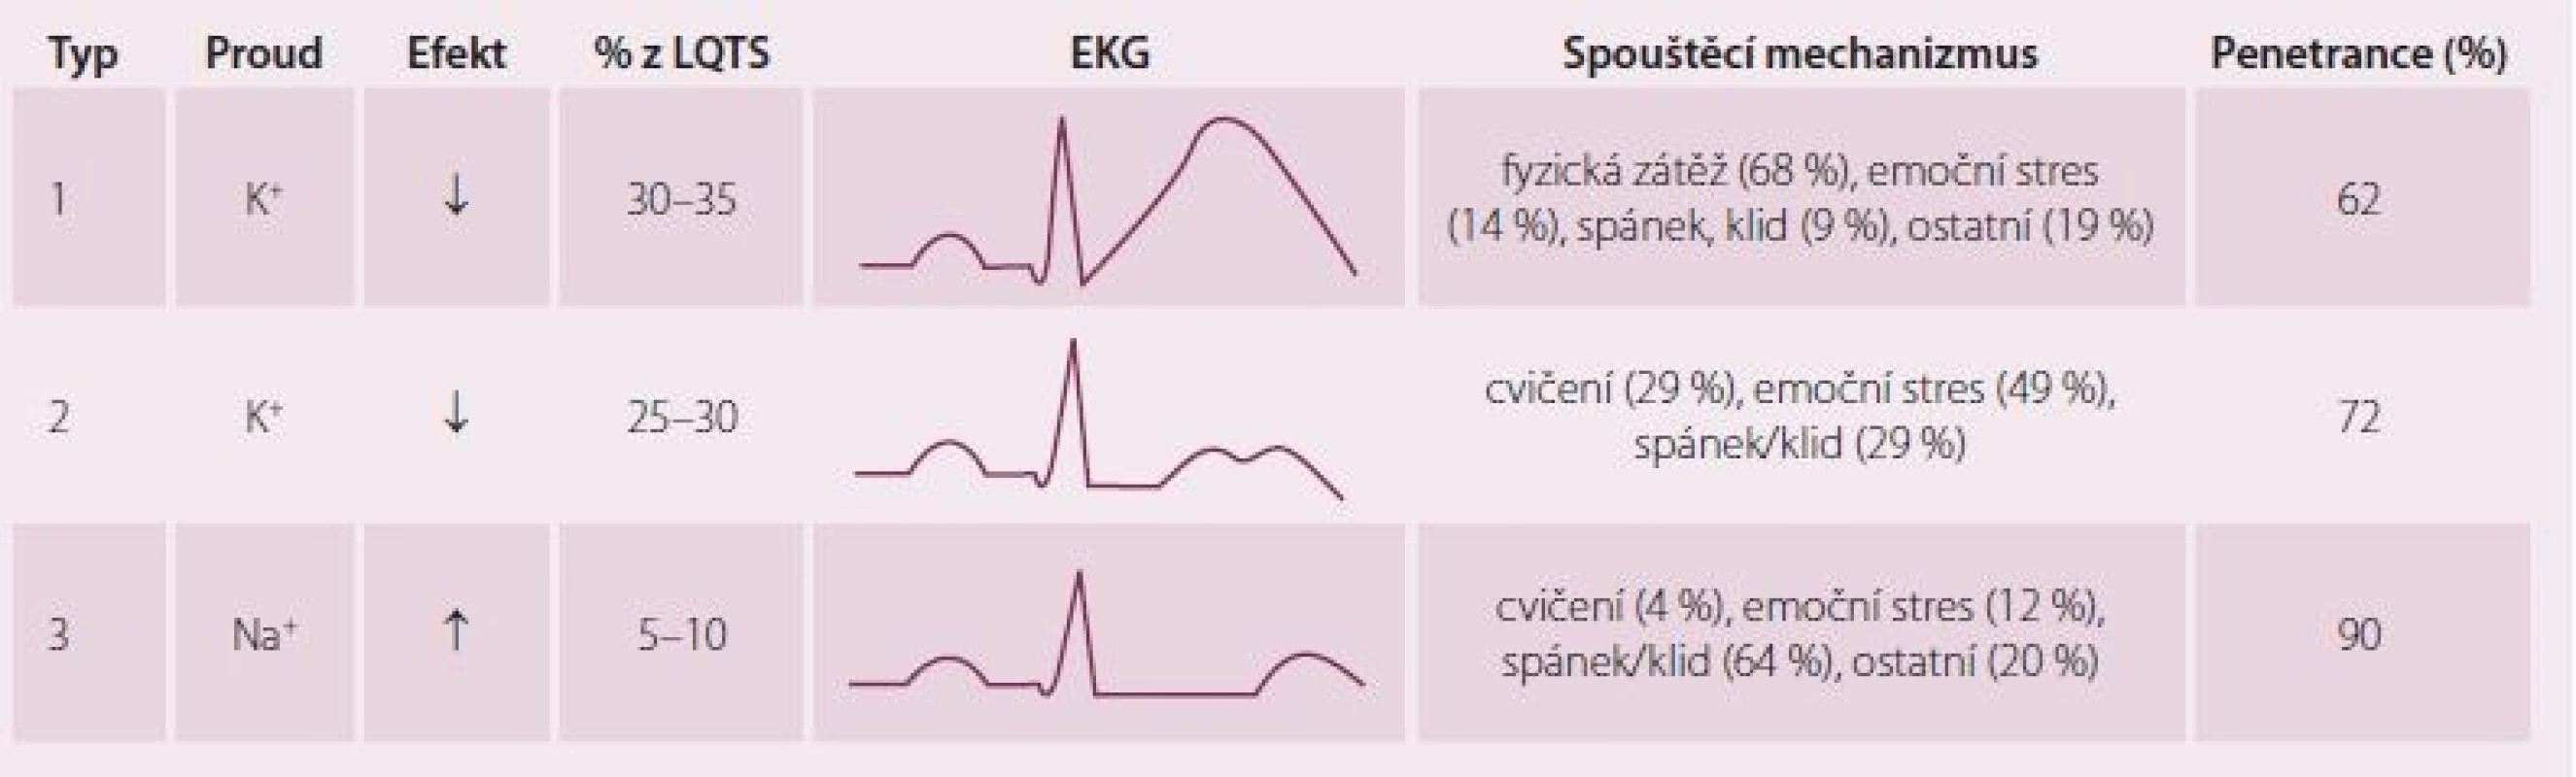 Nejčastější typy syndromu dlouhého QT a jejich EKG manifestace. Upraveno dle [5].